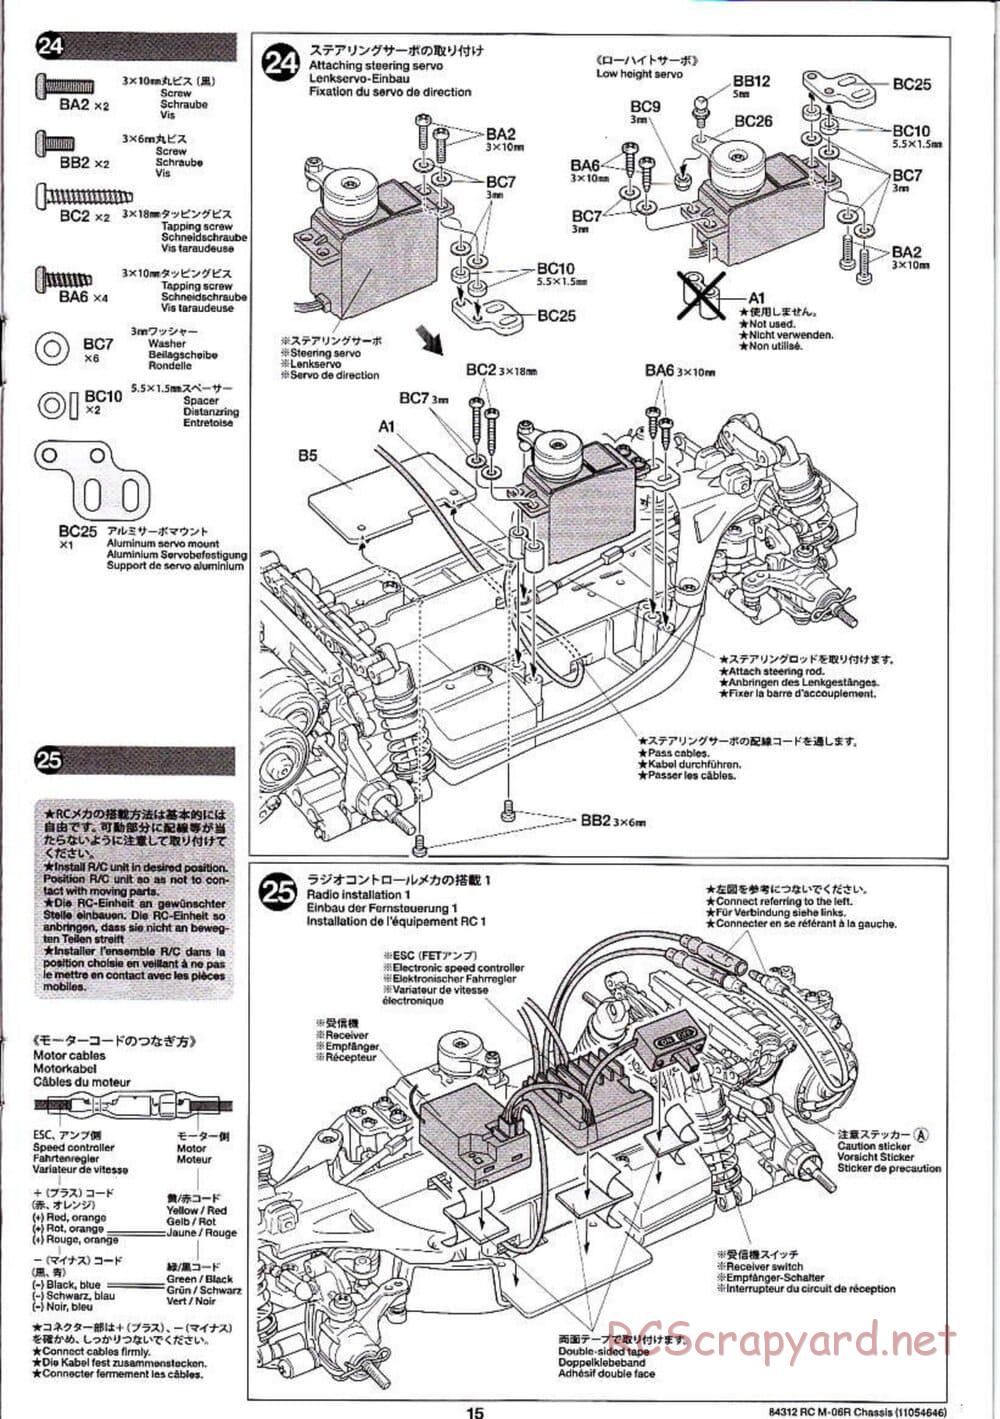 Tamiya - M-06R Chassis - Manual - Page 15